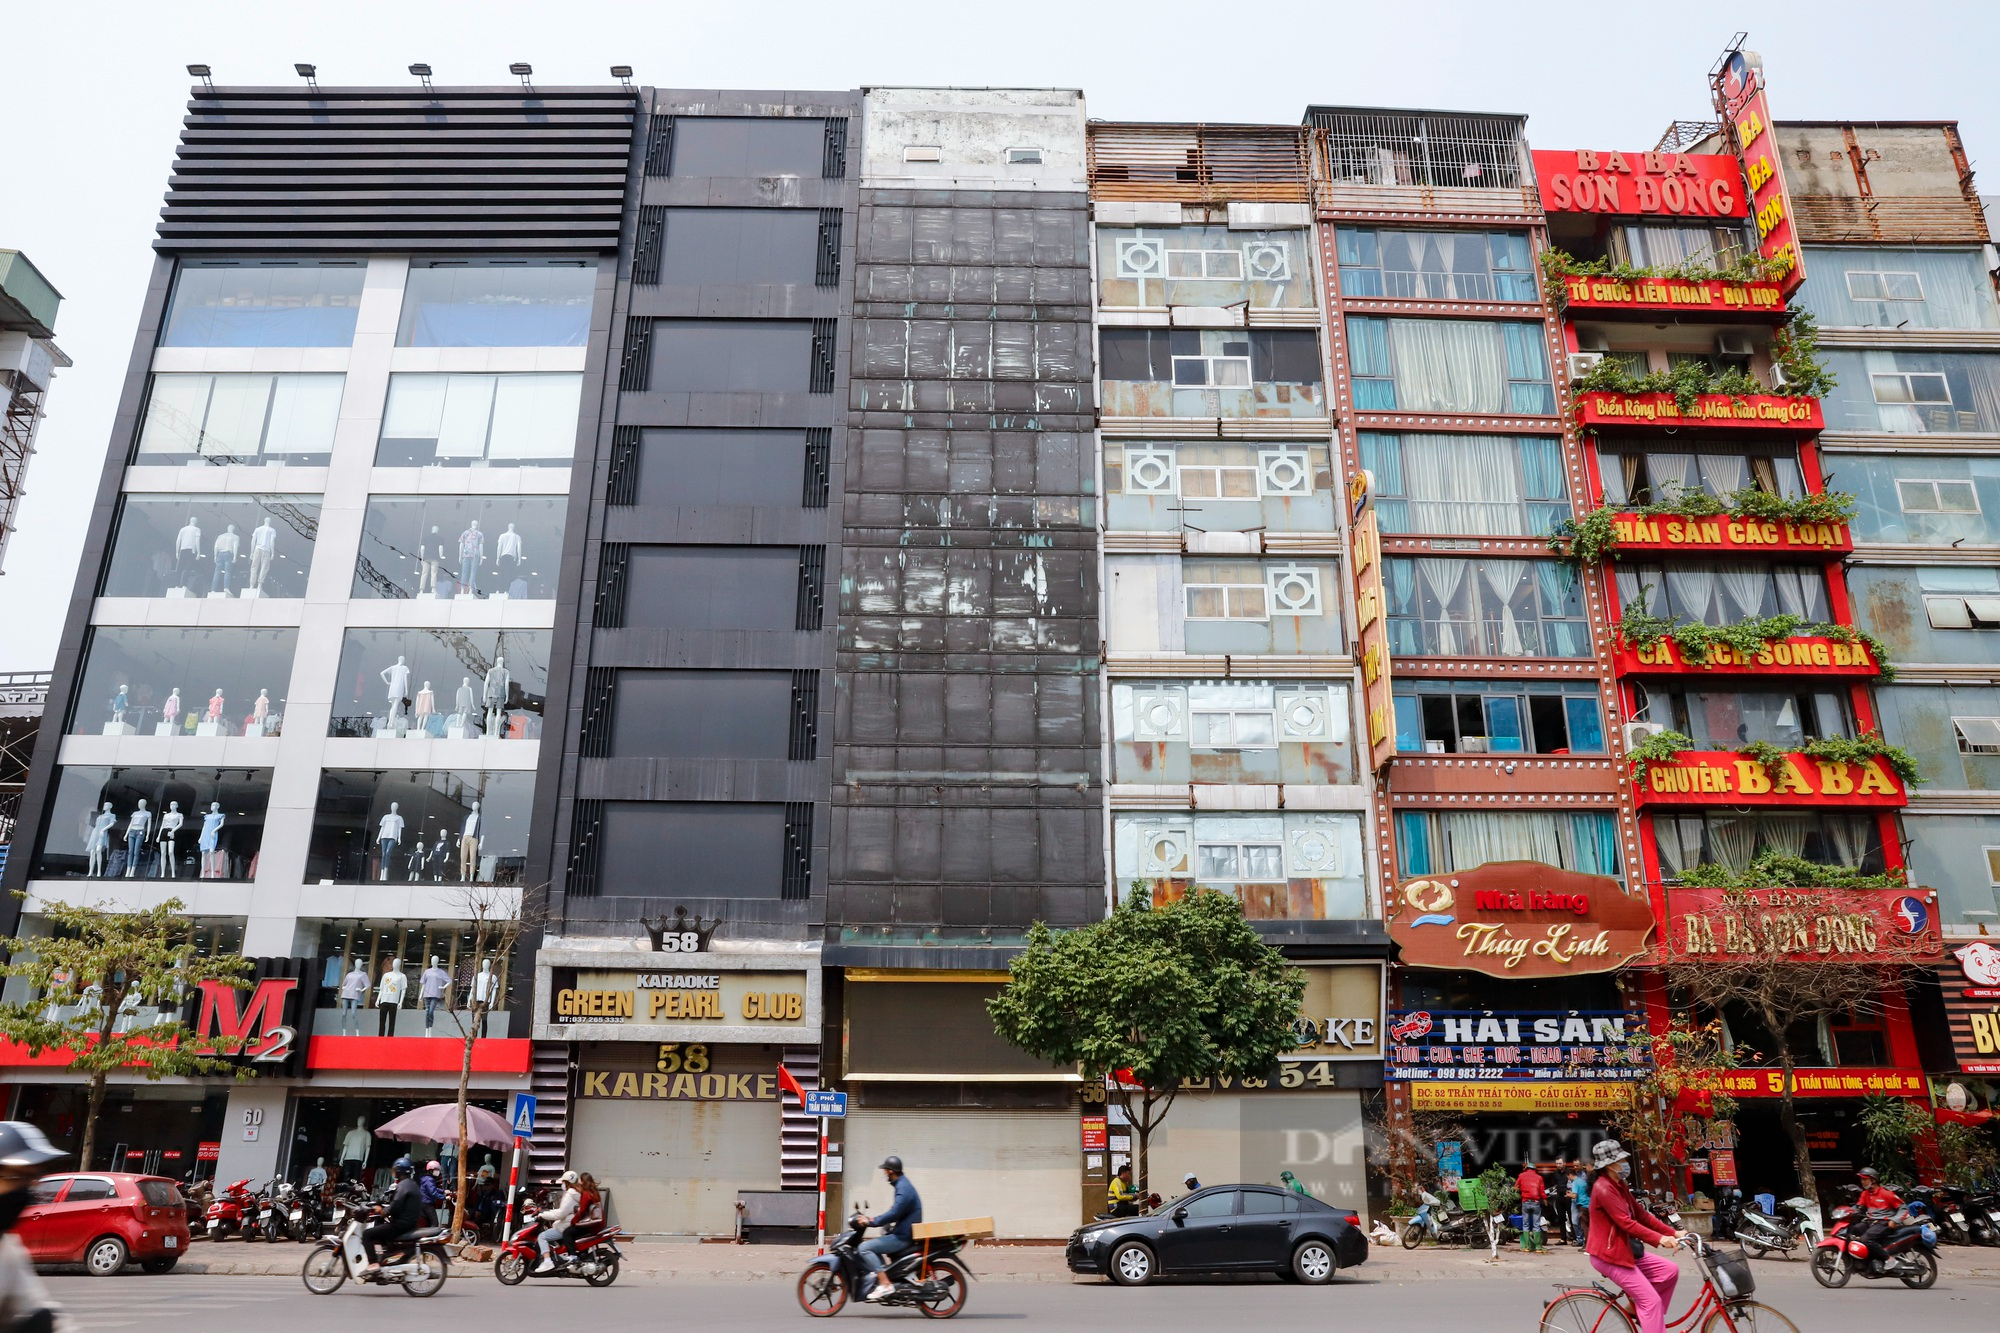 Ngừng kinh doanh quá lâu, nhiều quán karaoke tại Hà Nội treo biển nhà hàng - Ảnh 1.